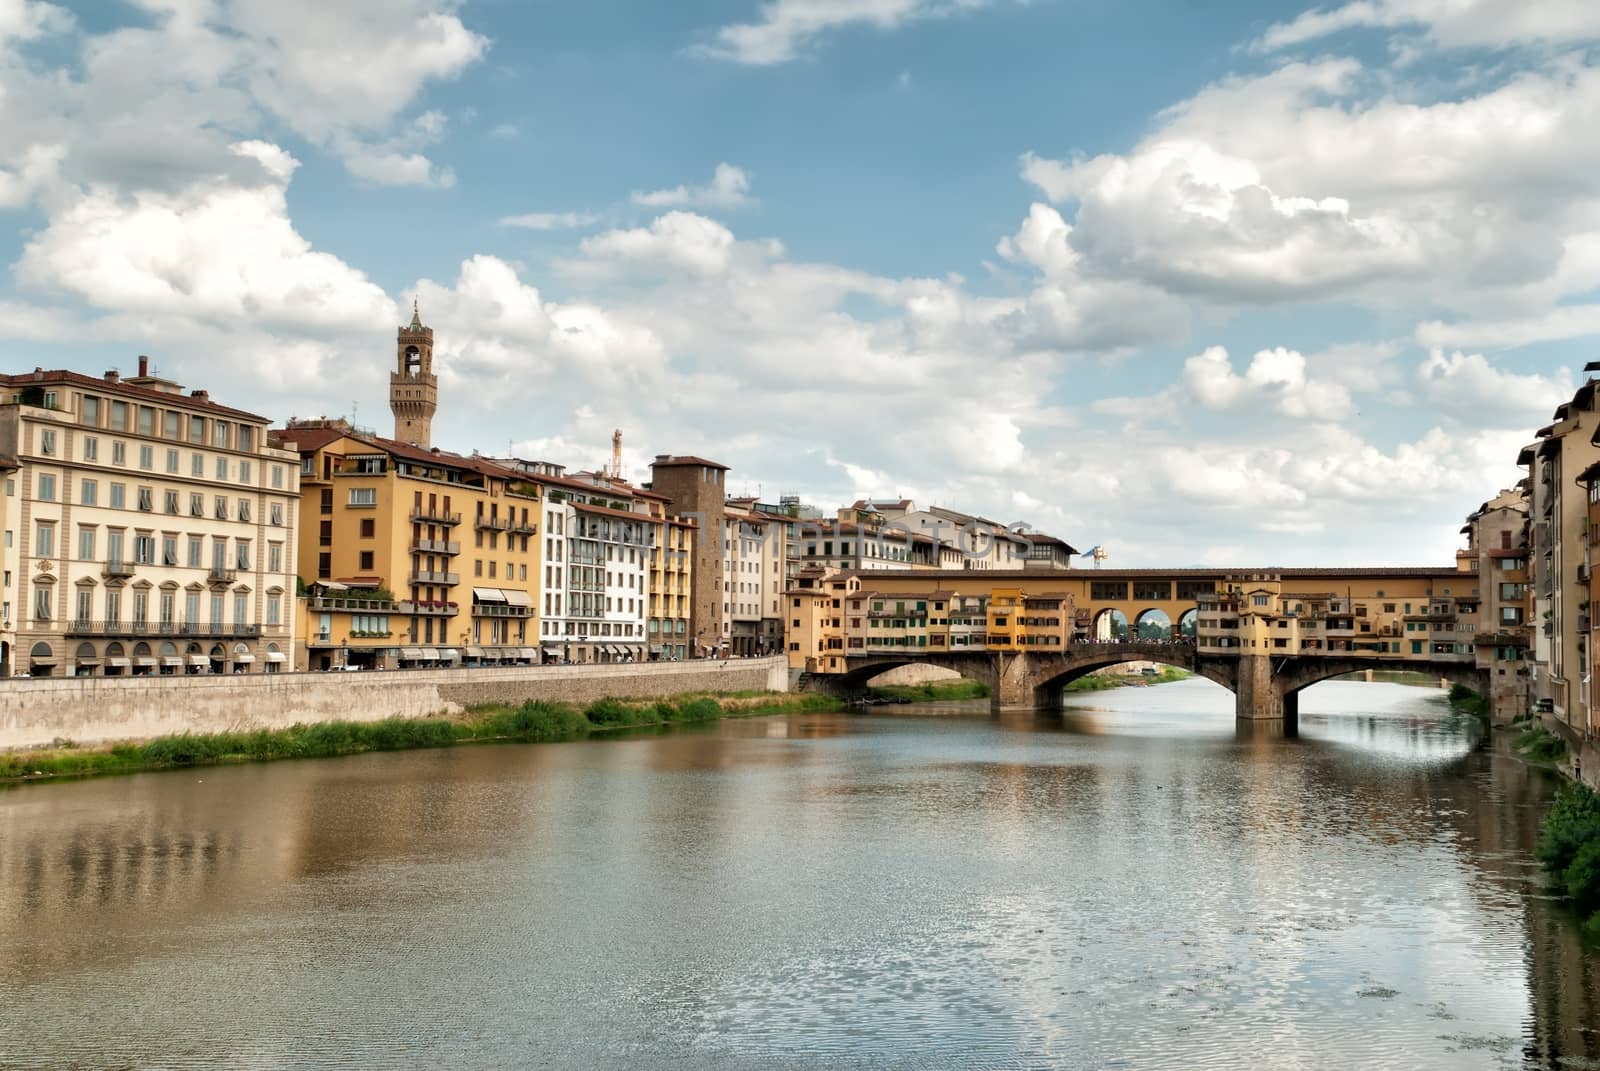 Bridge Vecchio in Florence Italy